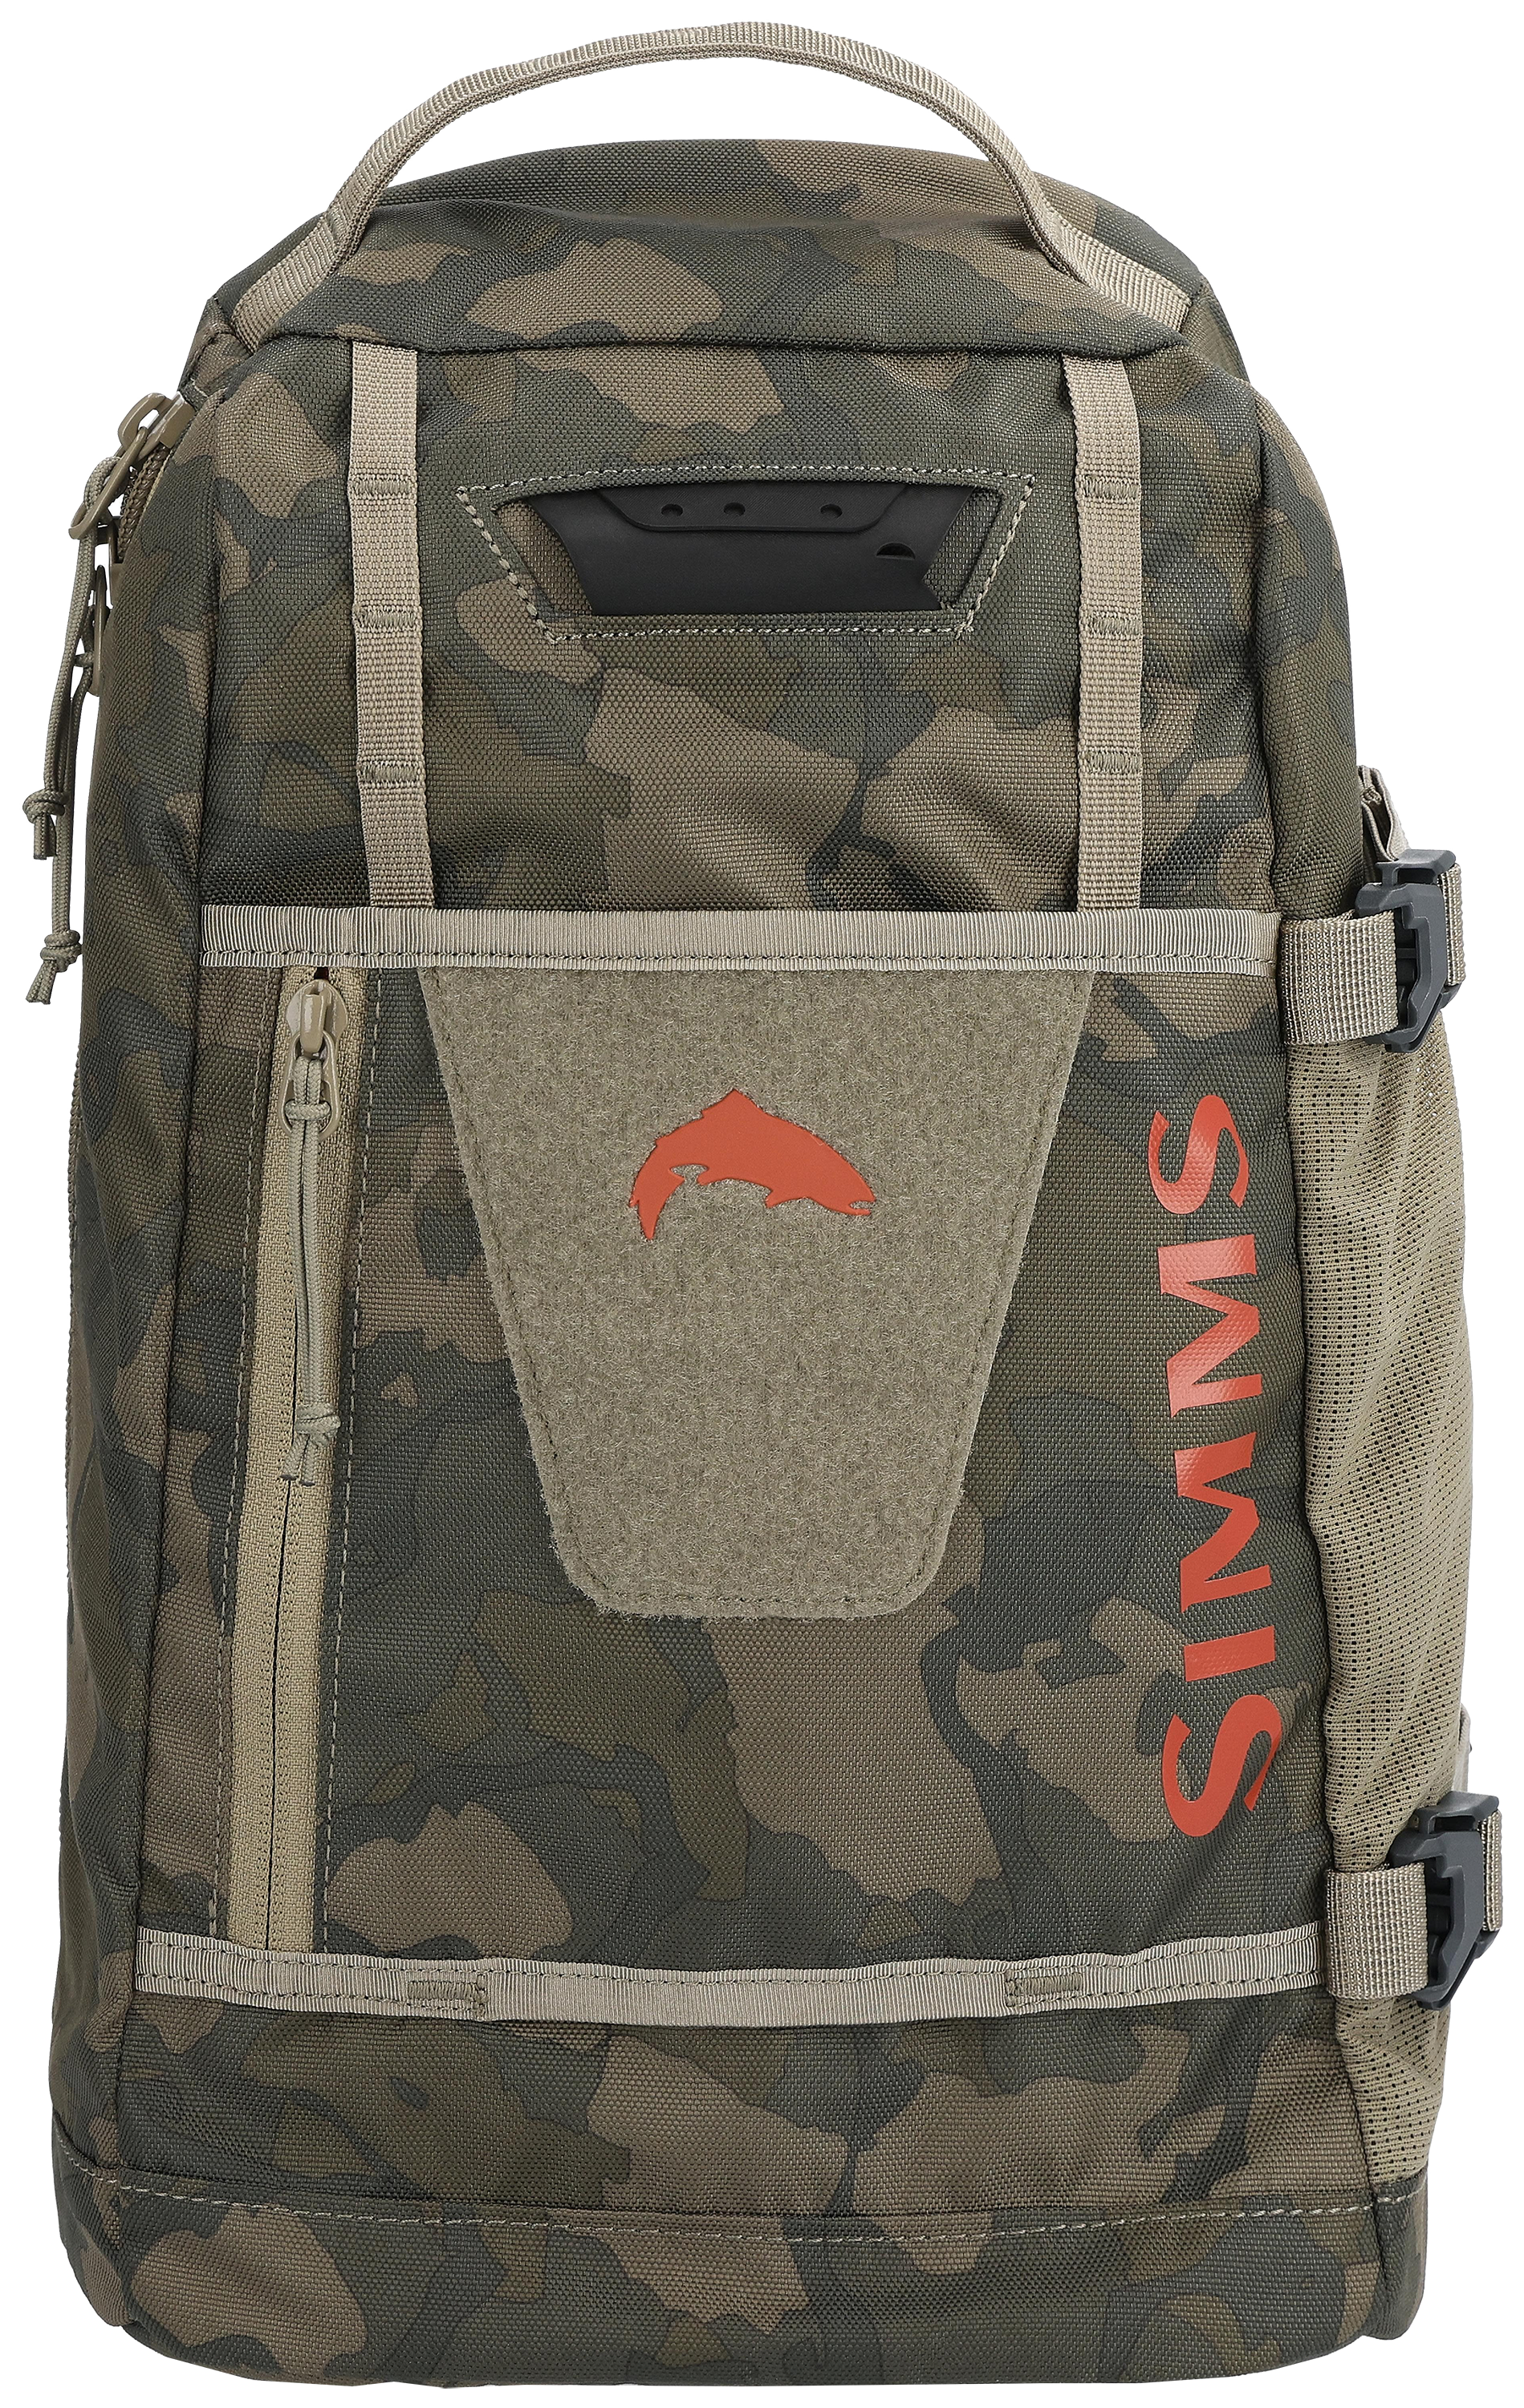 Simms Stash Bag  Buy Simms Fishing Bags and Packs Online at